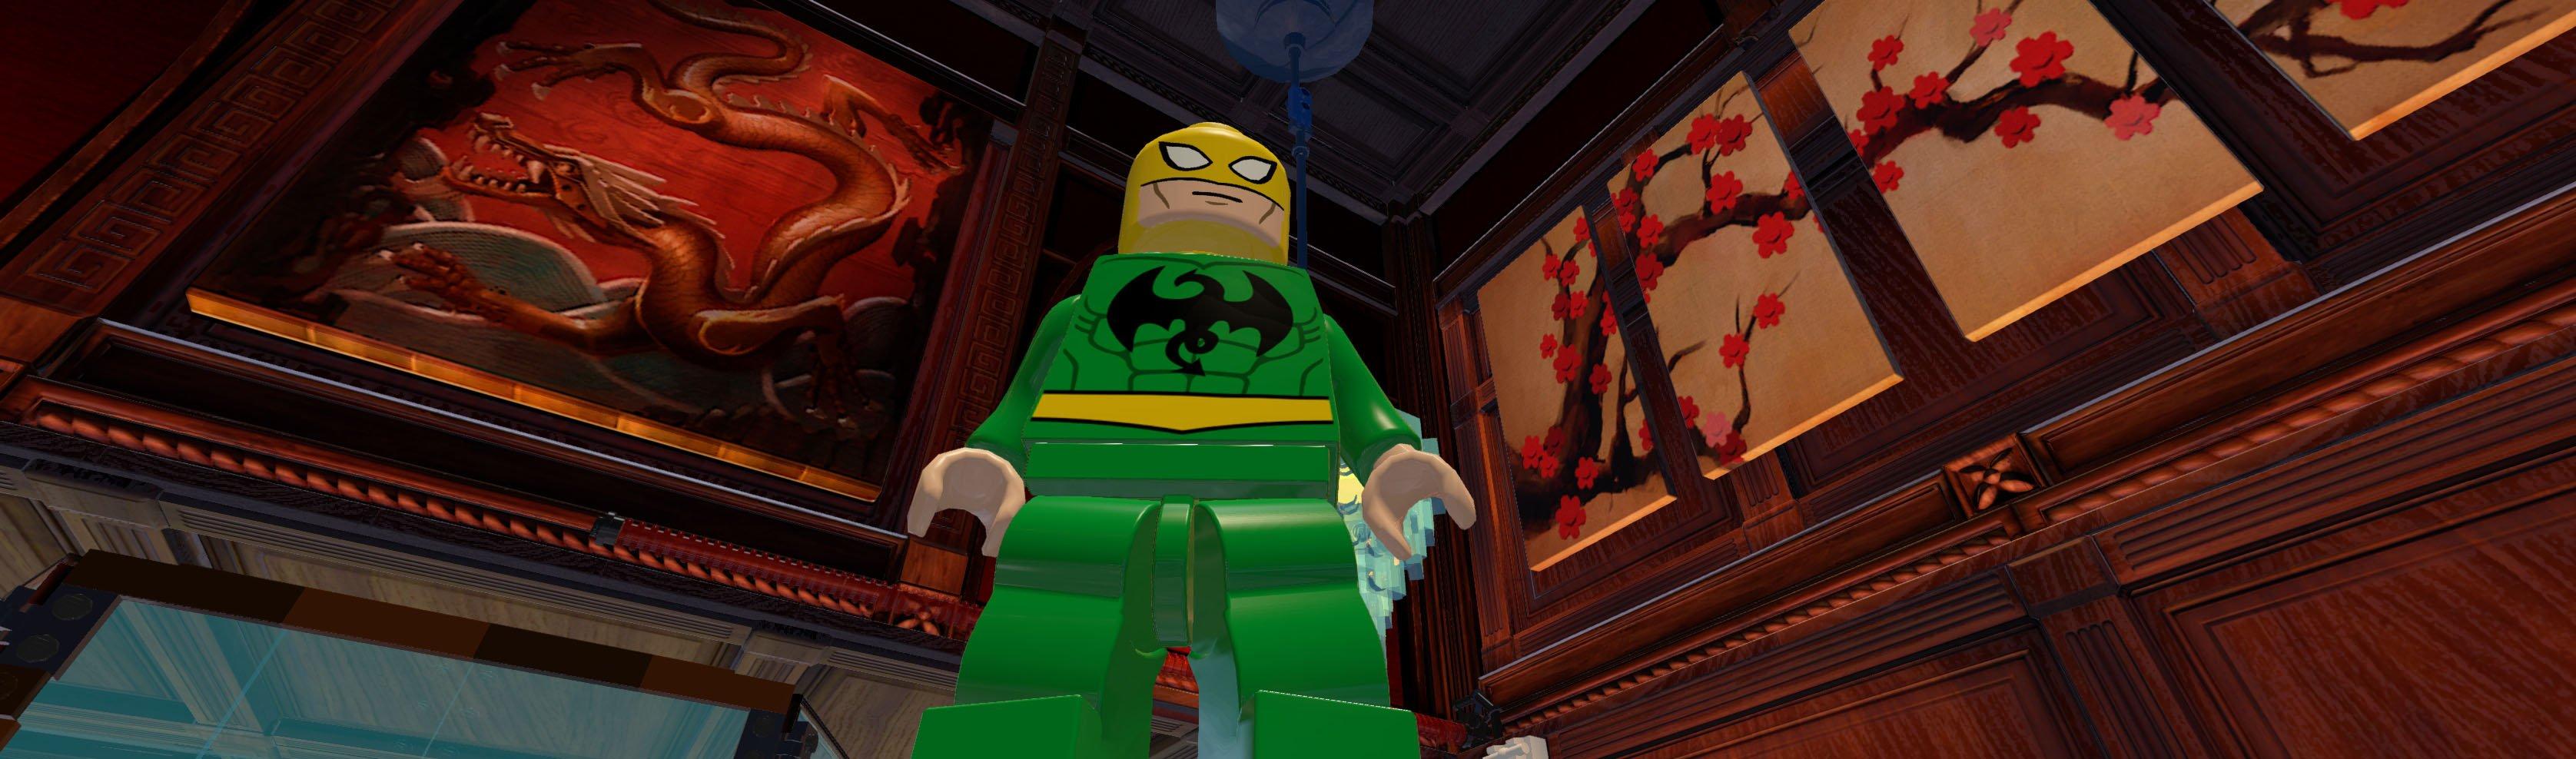 LEGO Marvel Super Heroes - PS Vita